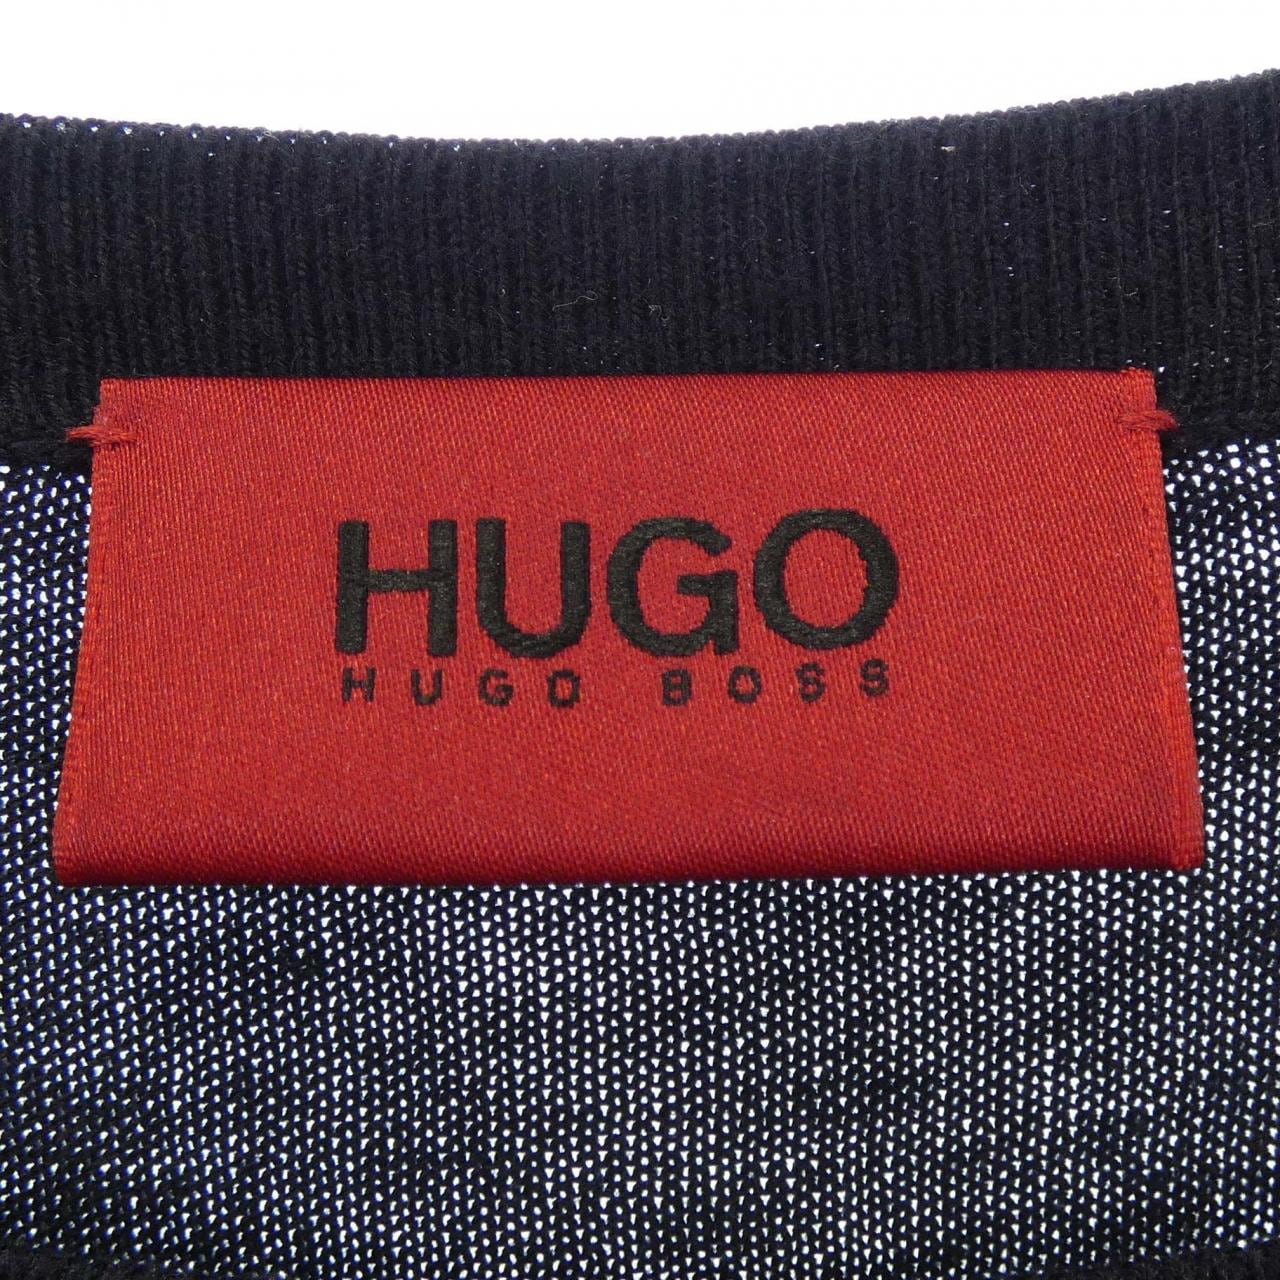 Hugo Boss HUGO BOSS針織衫